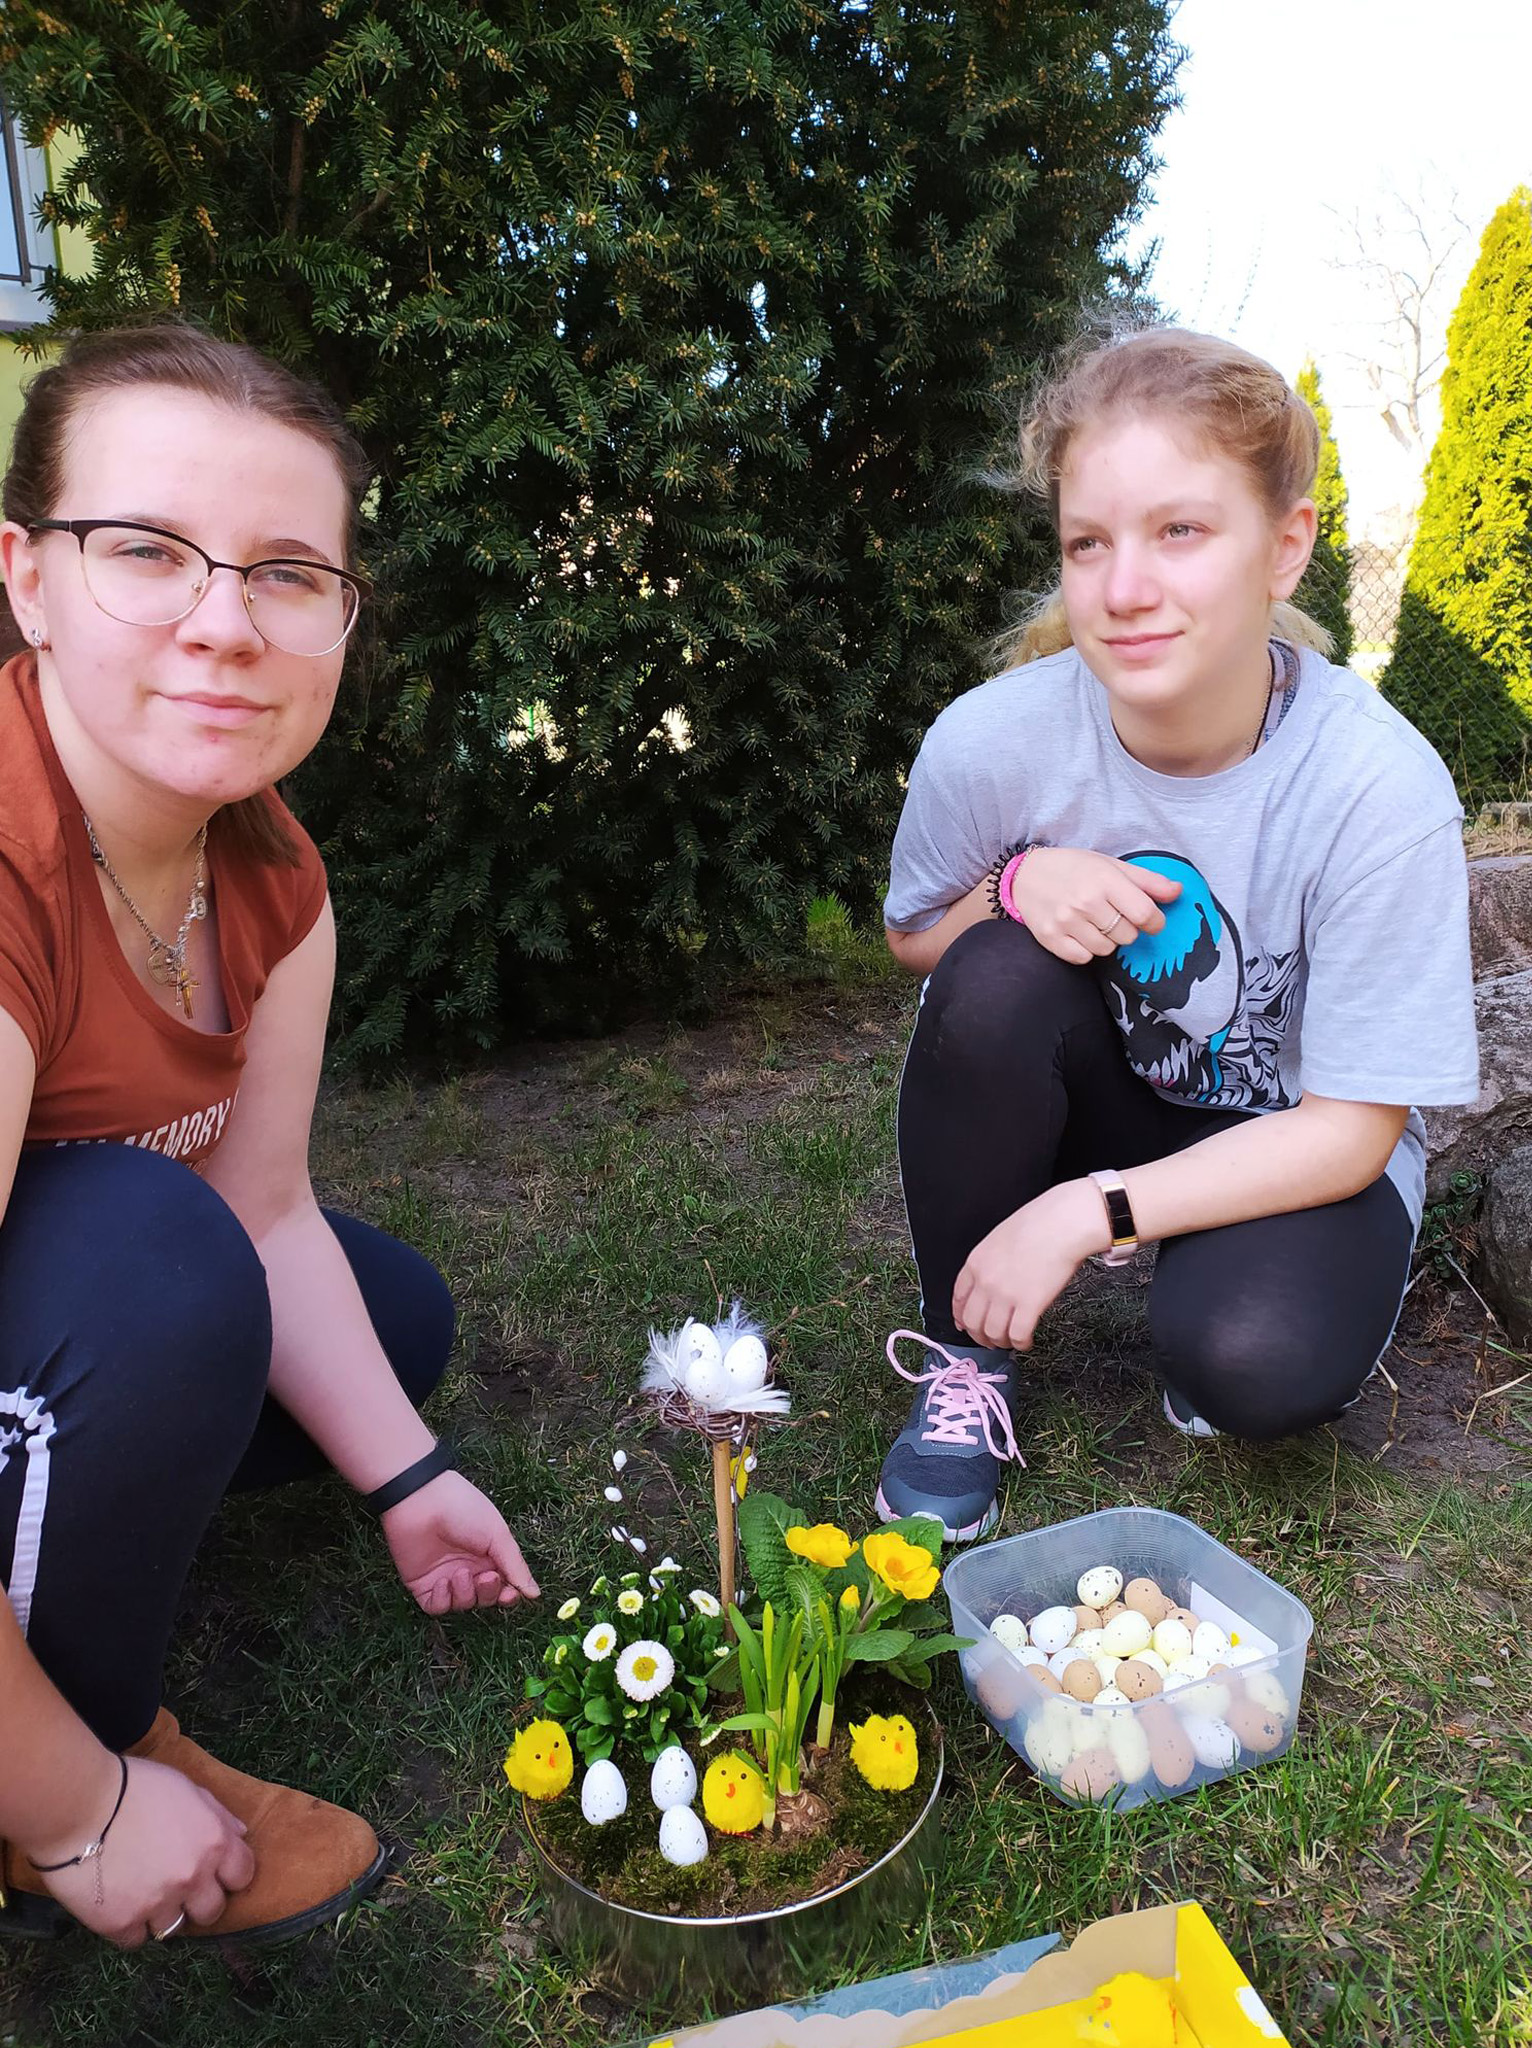 dziewczyny kucają na dworze ze stoikiem z żywych kwiatów w blaszce do pieczenia